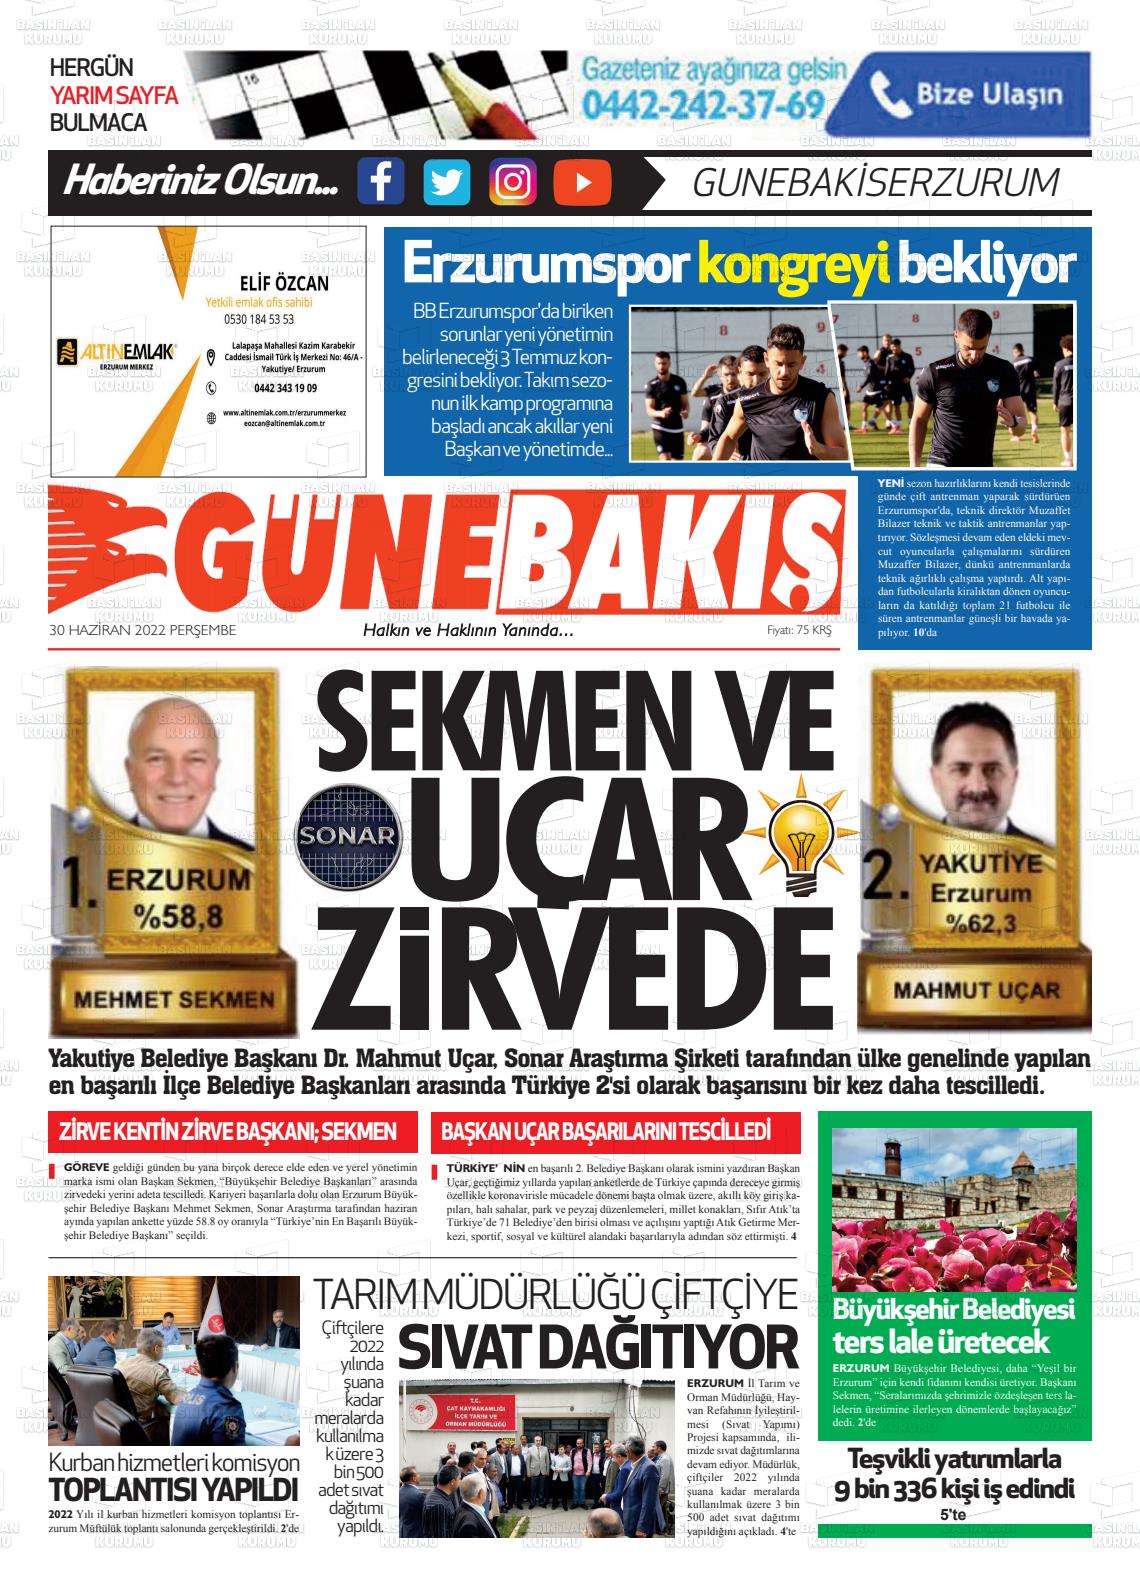 02 Temmuz 2022 Erzurum Günebakış Gazete Manşeti